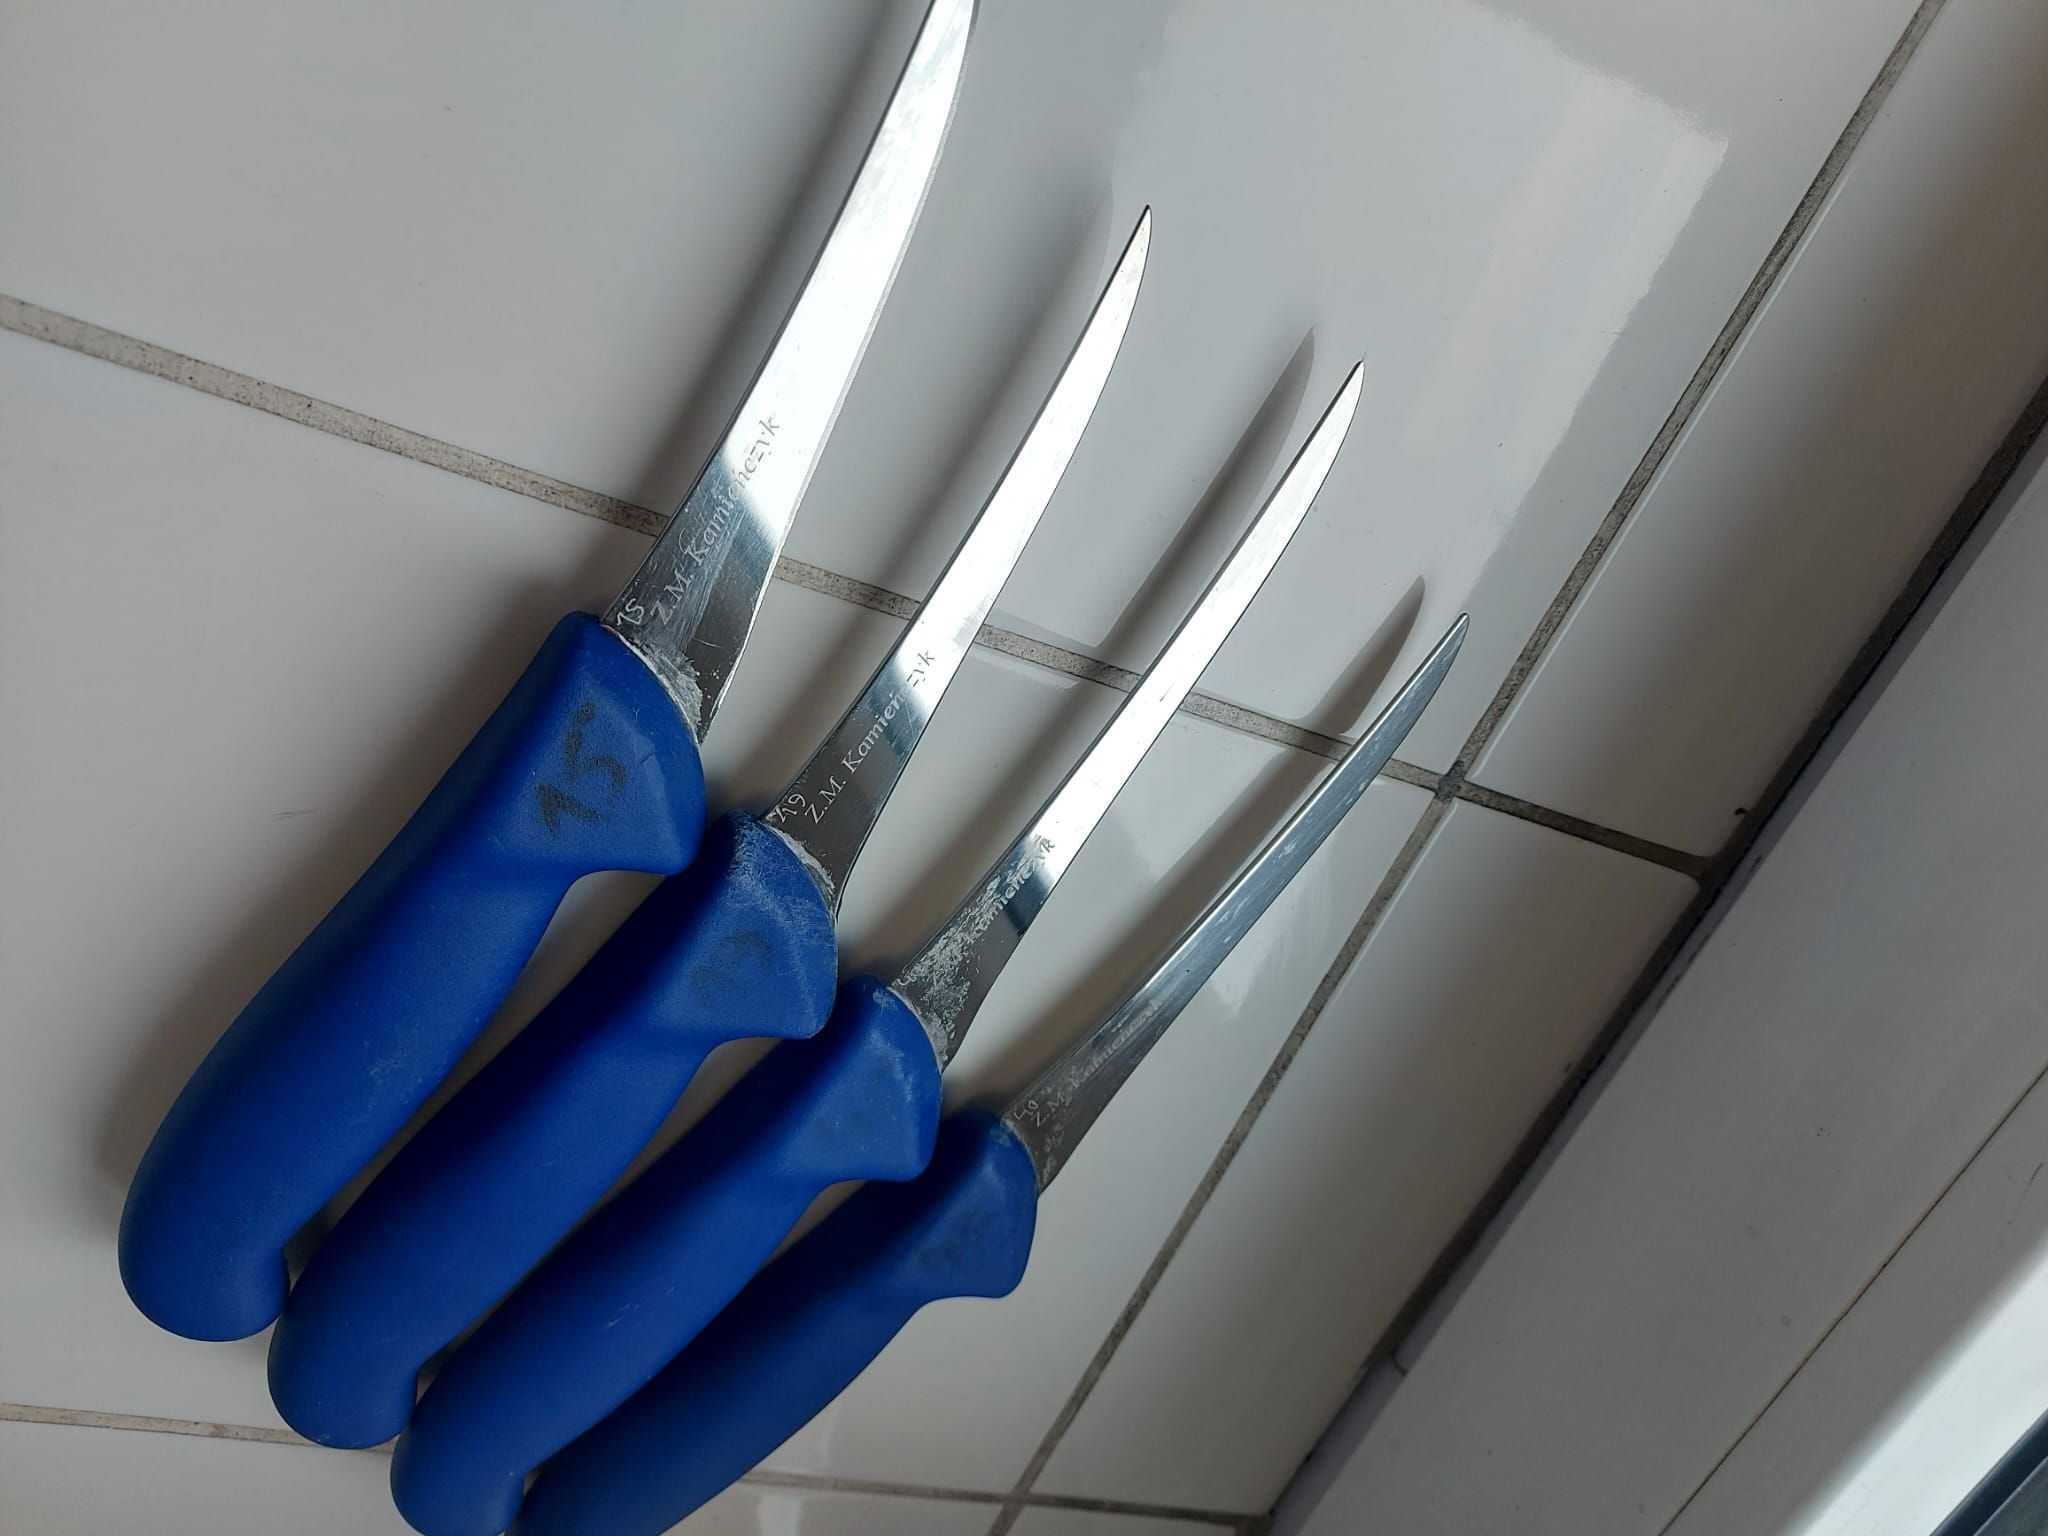 Używane noże nóż masarskie/rzeźnicze